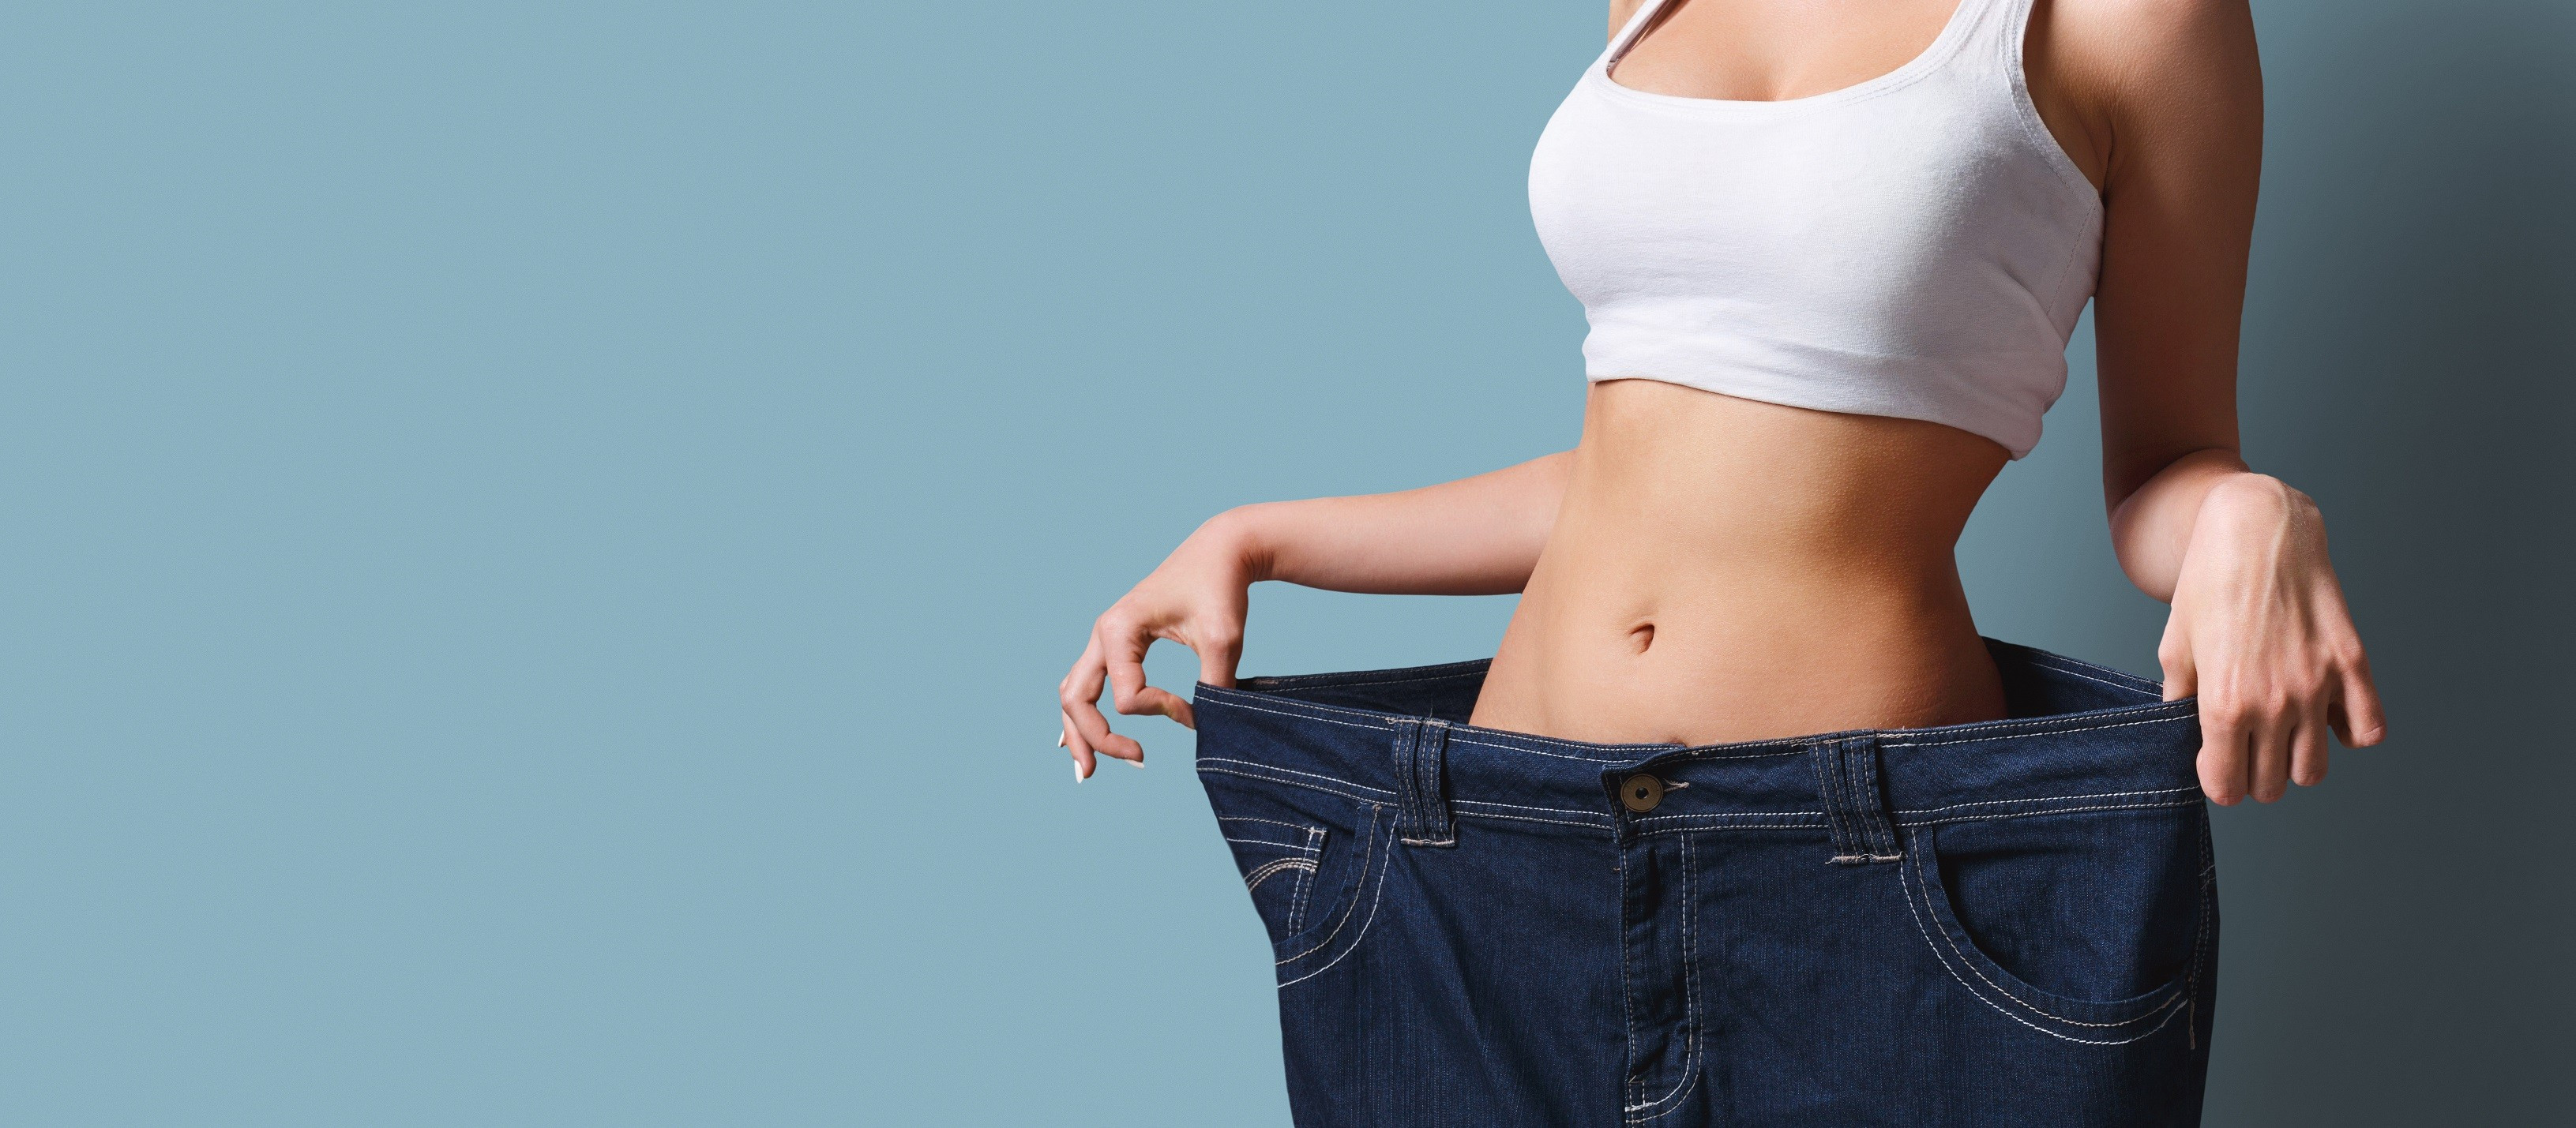 Как убрать живот и бока: 12 упражнений для похудения, полезные советы